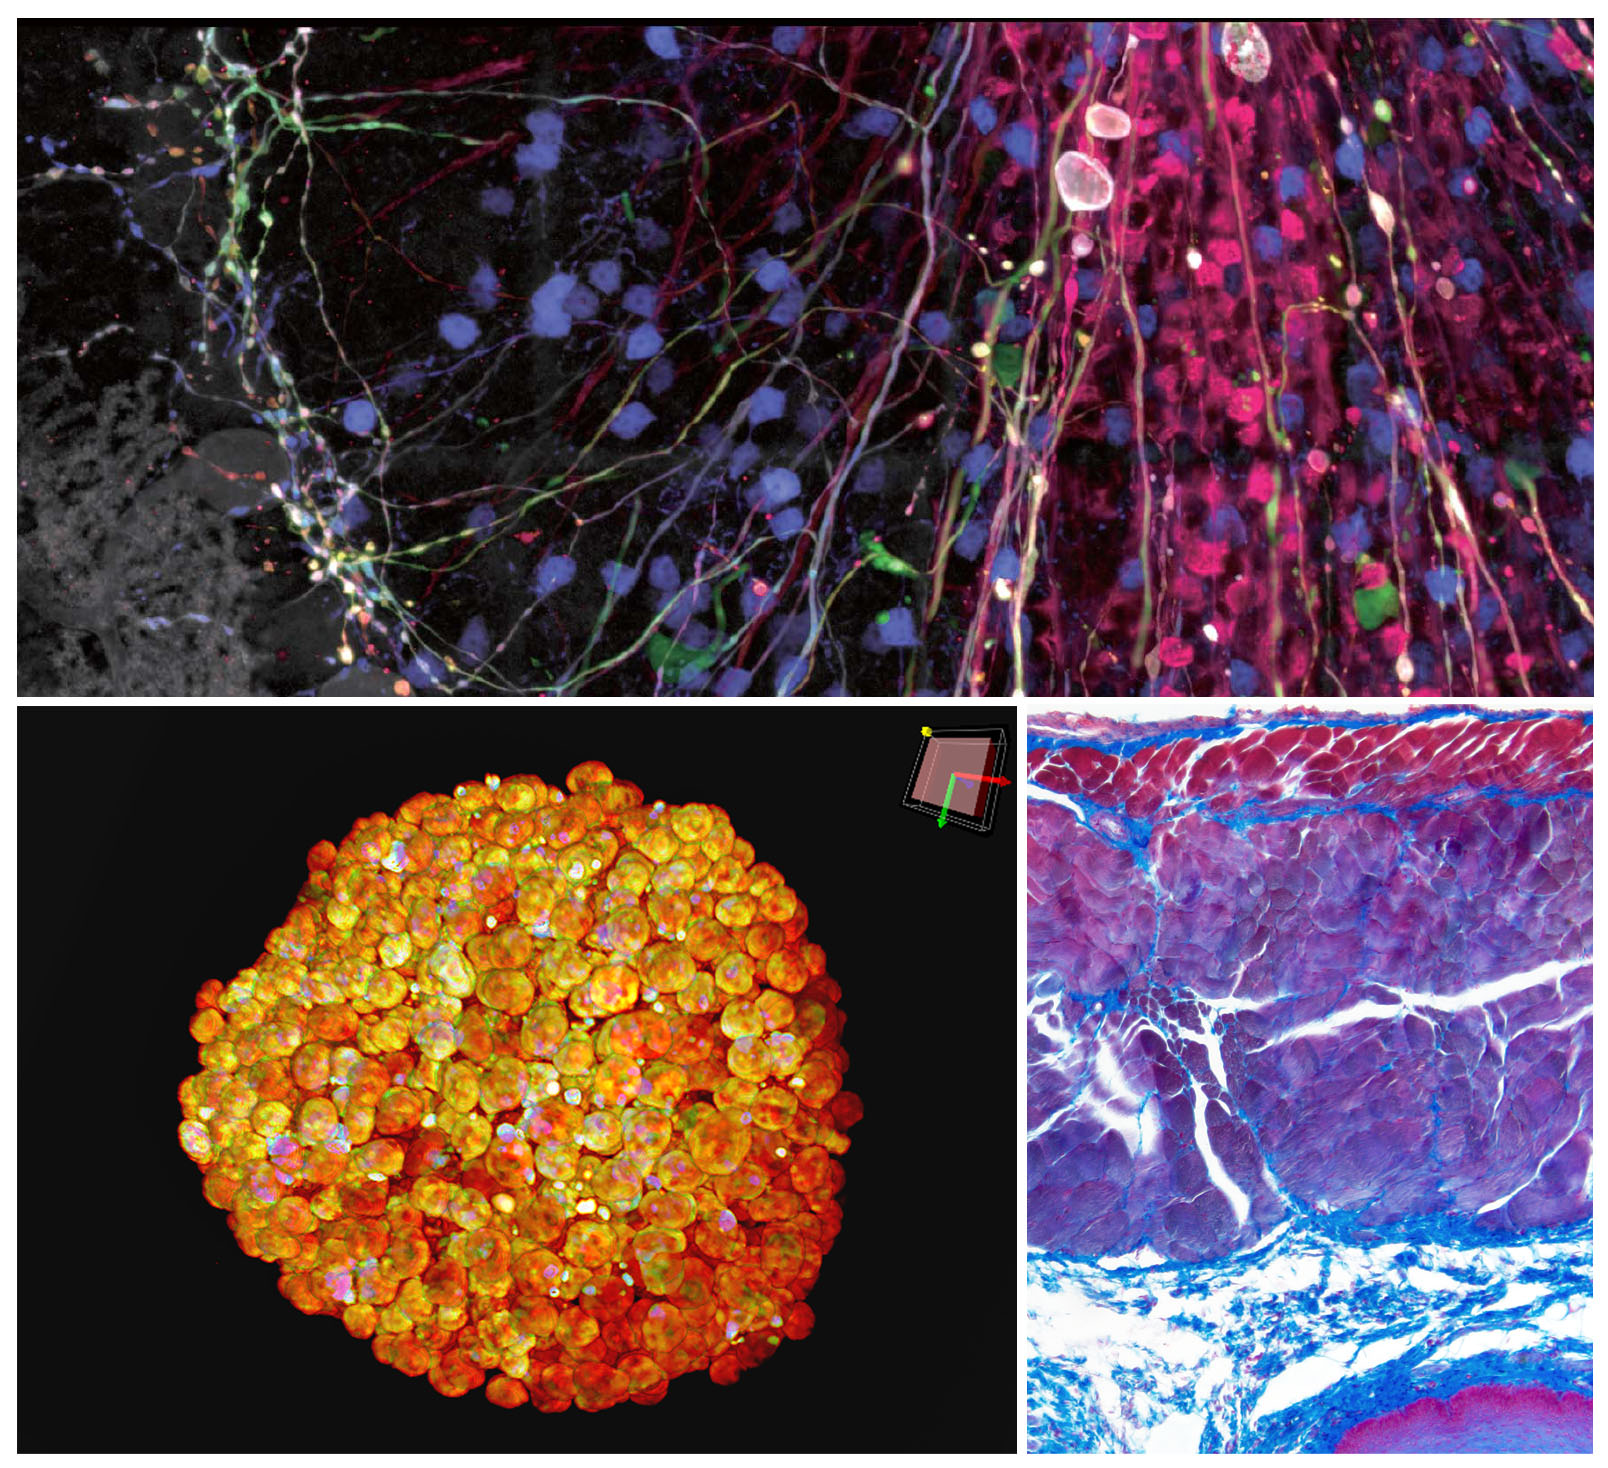 In alto: Immagine di trasfezione di AAV Brainbow di cellule di Purkinje, amplificate con anticorpi; sono visibili soma di cellule di Purkinje dendriti, assoni e alcune macchie non specifiche di cellule granulari acquisite mediante il microscopio FV3000 In basso a sinistra: Sferoide chiarificato di cellule HT-29 colorato con DAPI (nucleare) acquisito attraverso il sistema Spin IXplore Olympus In basso a destra: Azan colorato acquisito attraverso la fotocamera per microscopio digitale DP74 